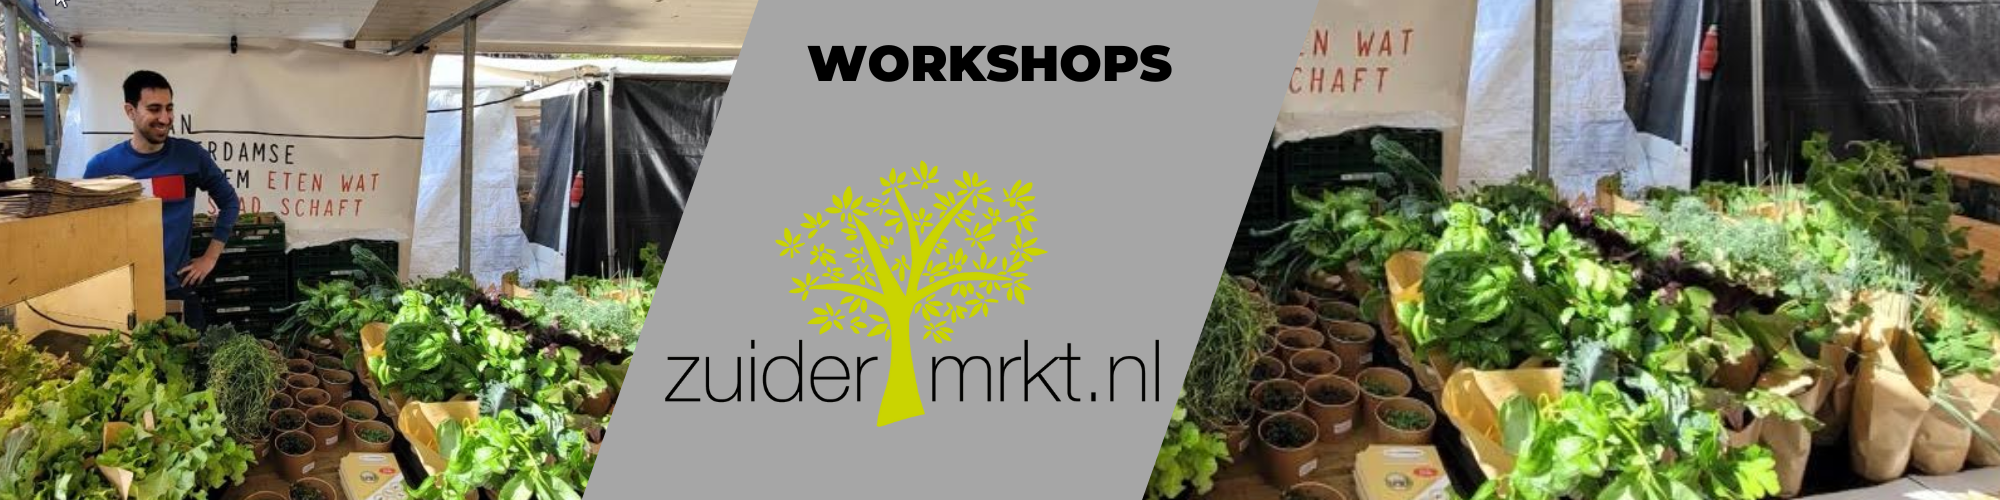 ZuiderMRKT workshop - header